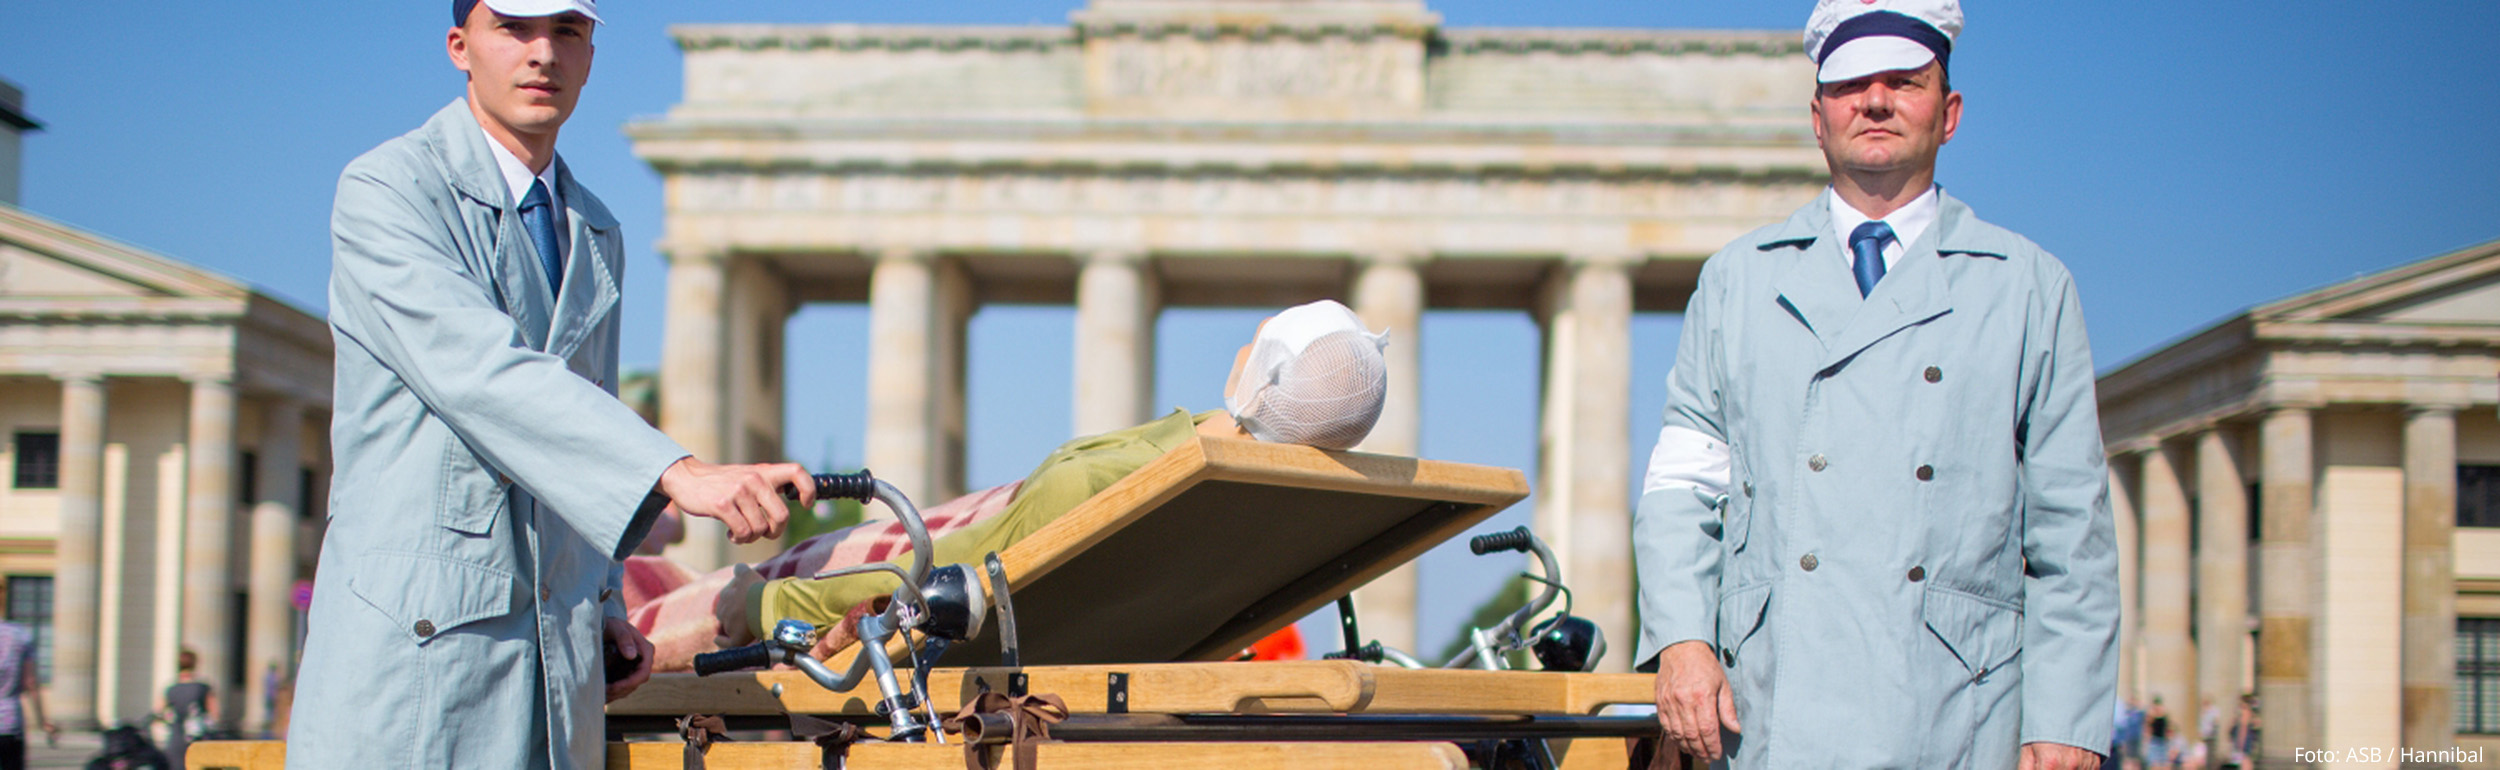 Nachgestelltes historisches Foto mit zwei Samaritern und Holzfahrradtrage vor dem Brandenburger Tor